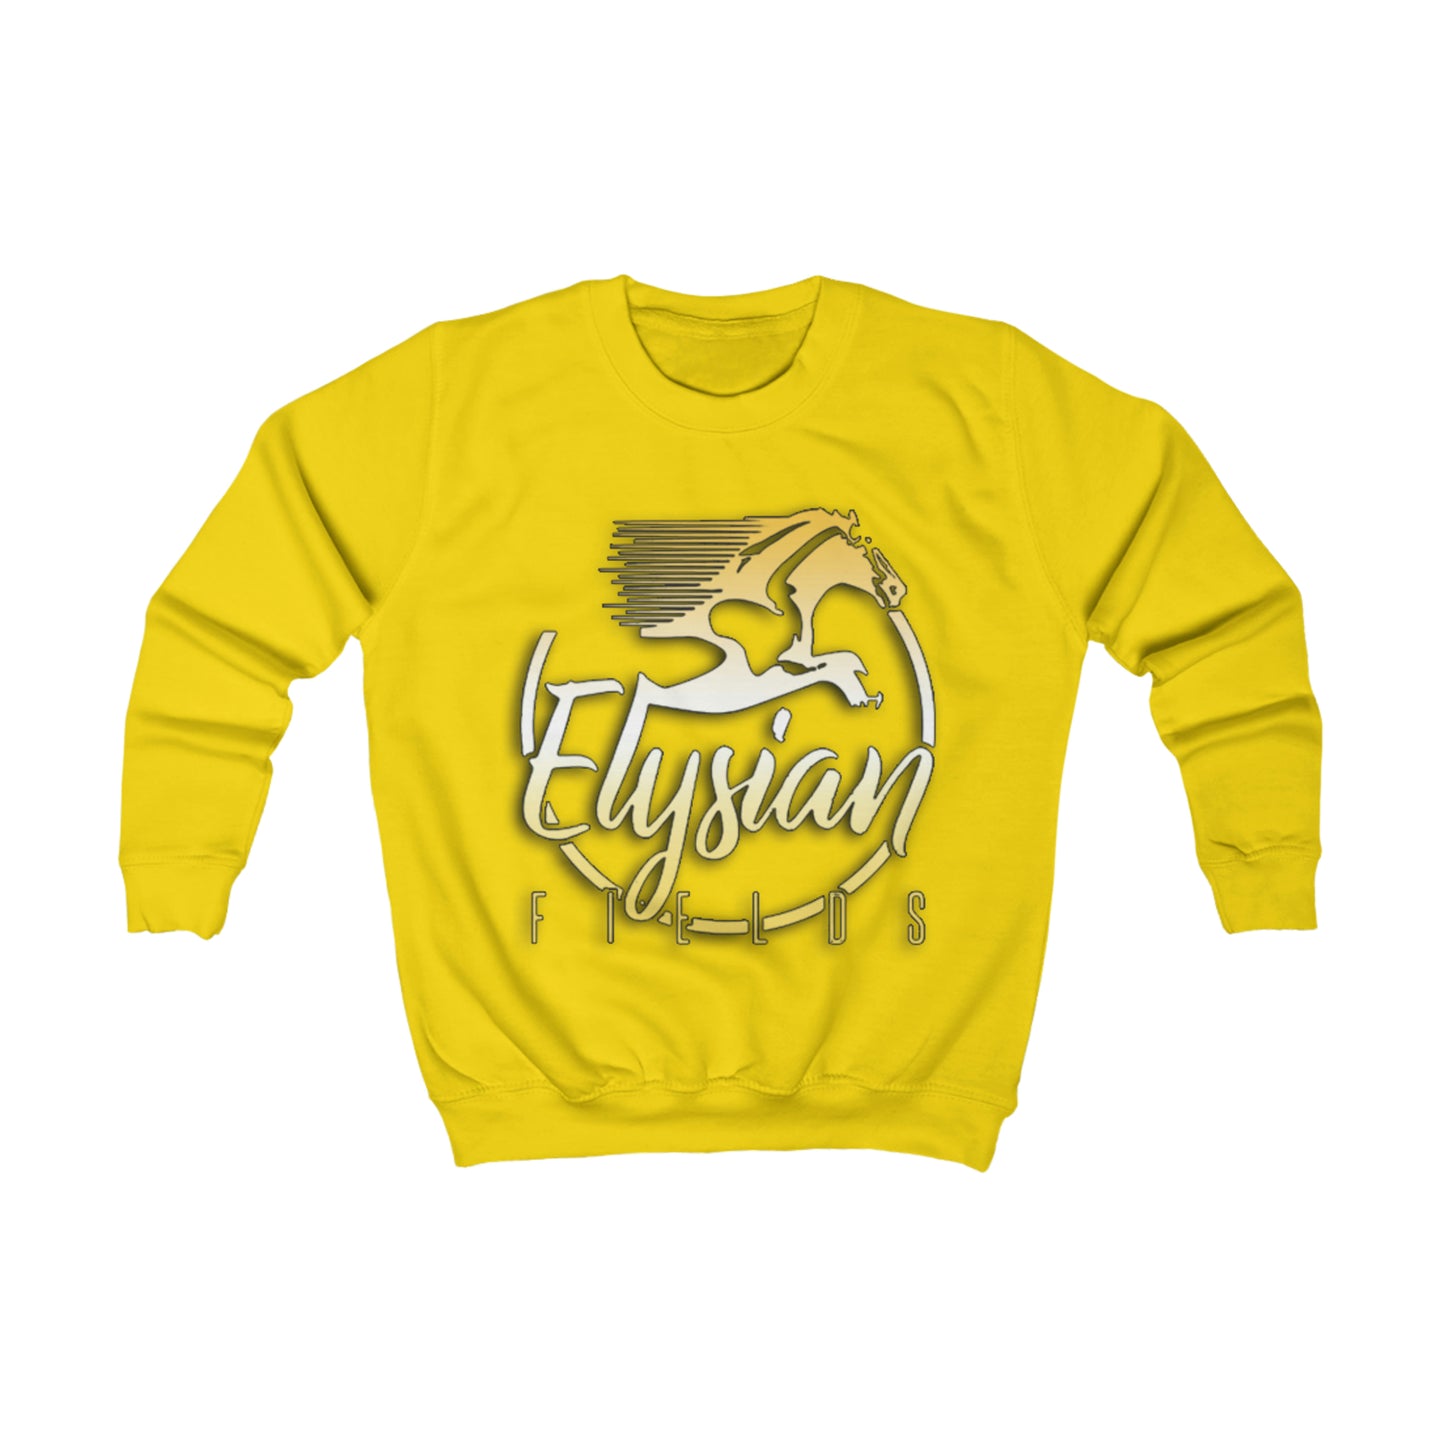 Elysian Fields - Kids Sweatshirt